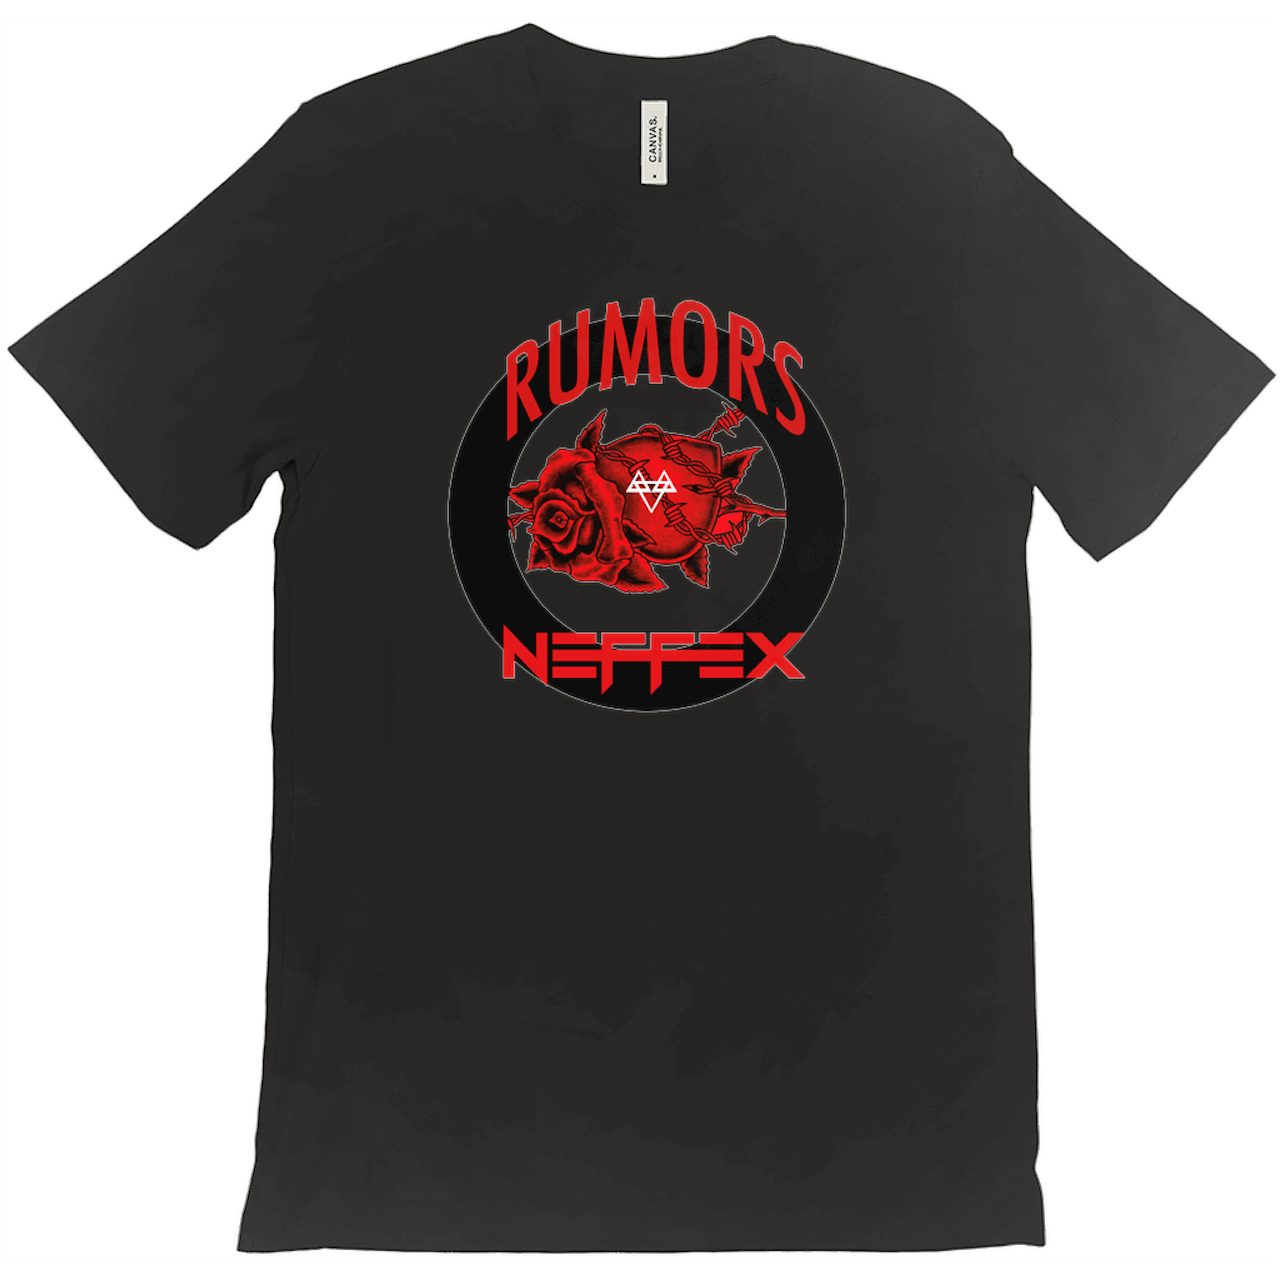 Neffex Rumors T Shirt